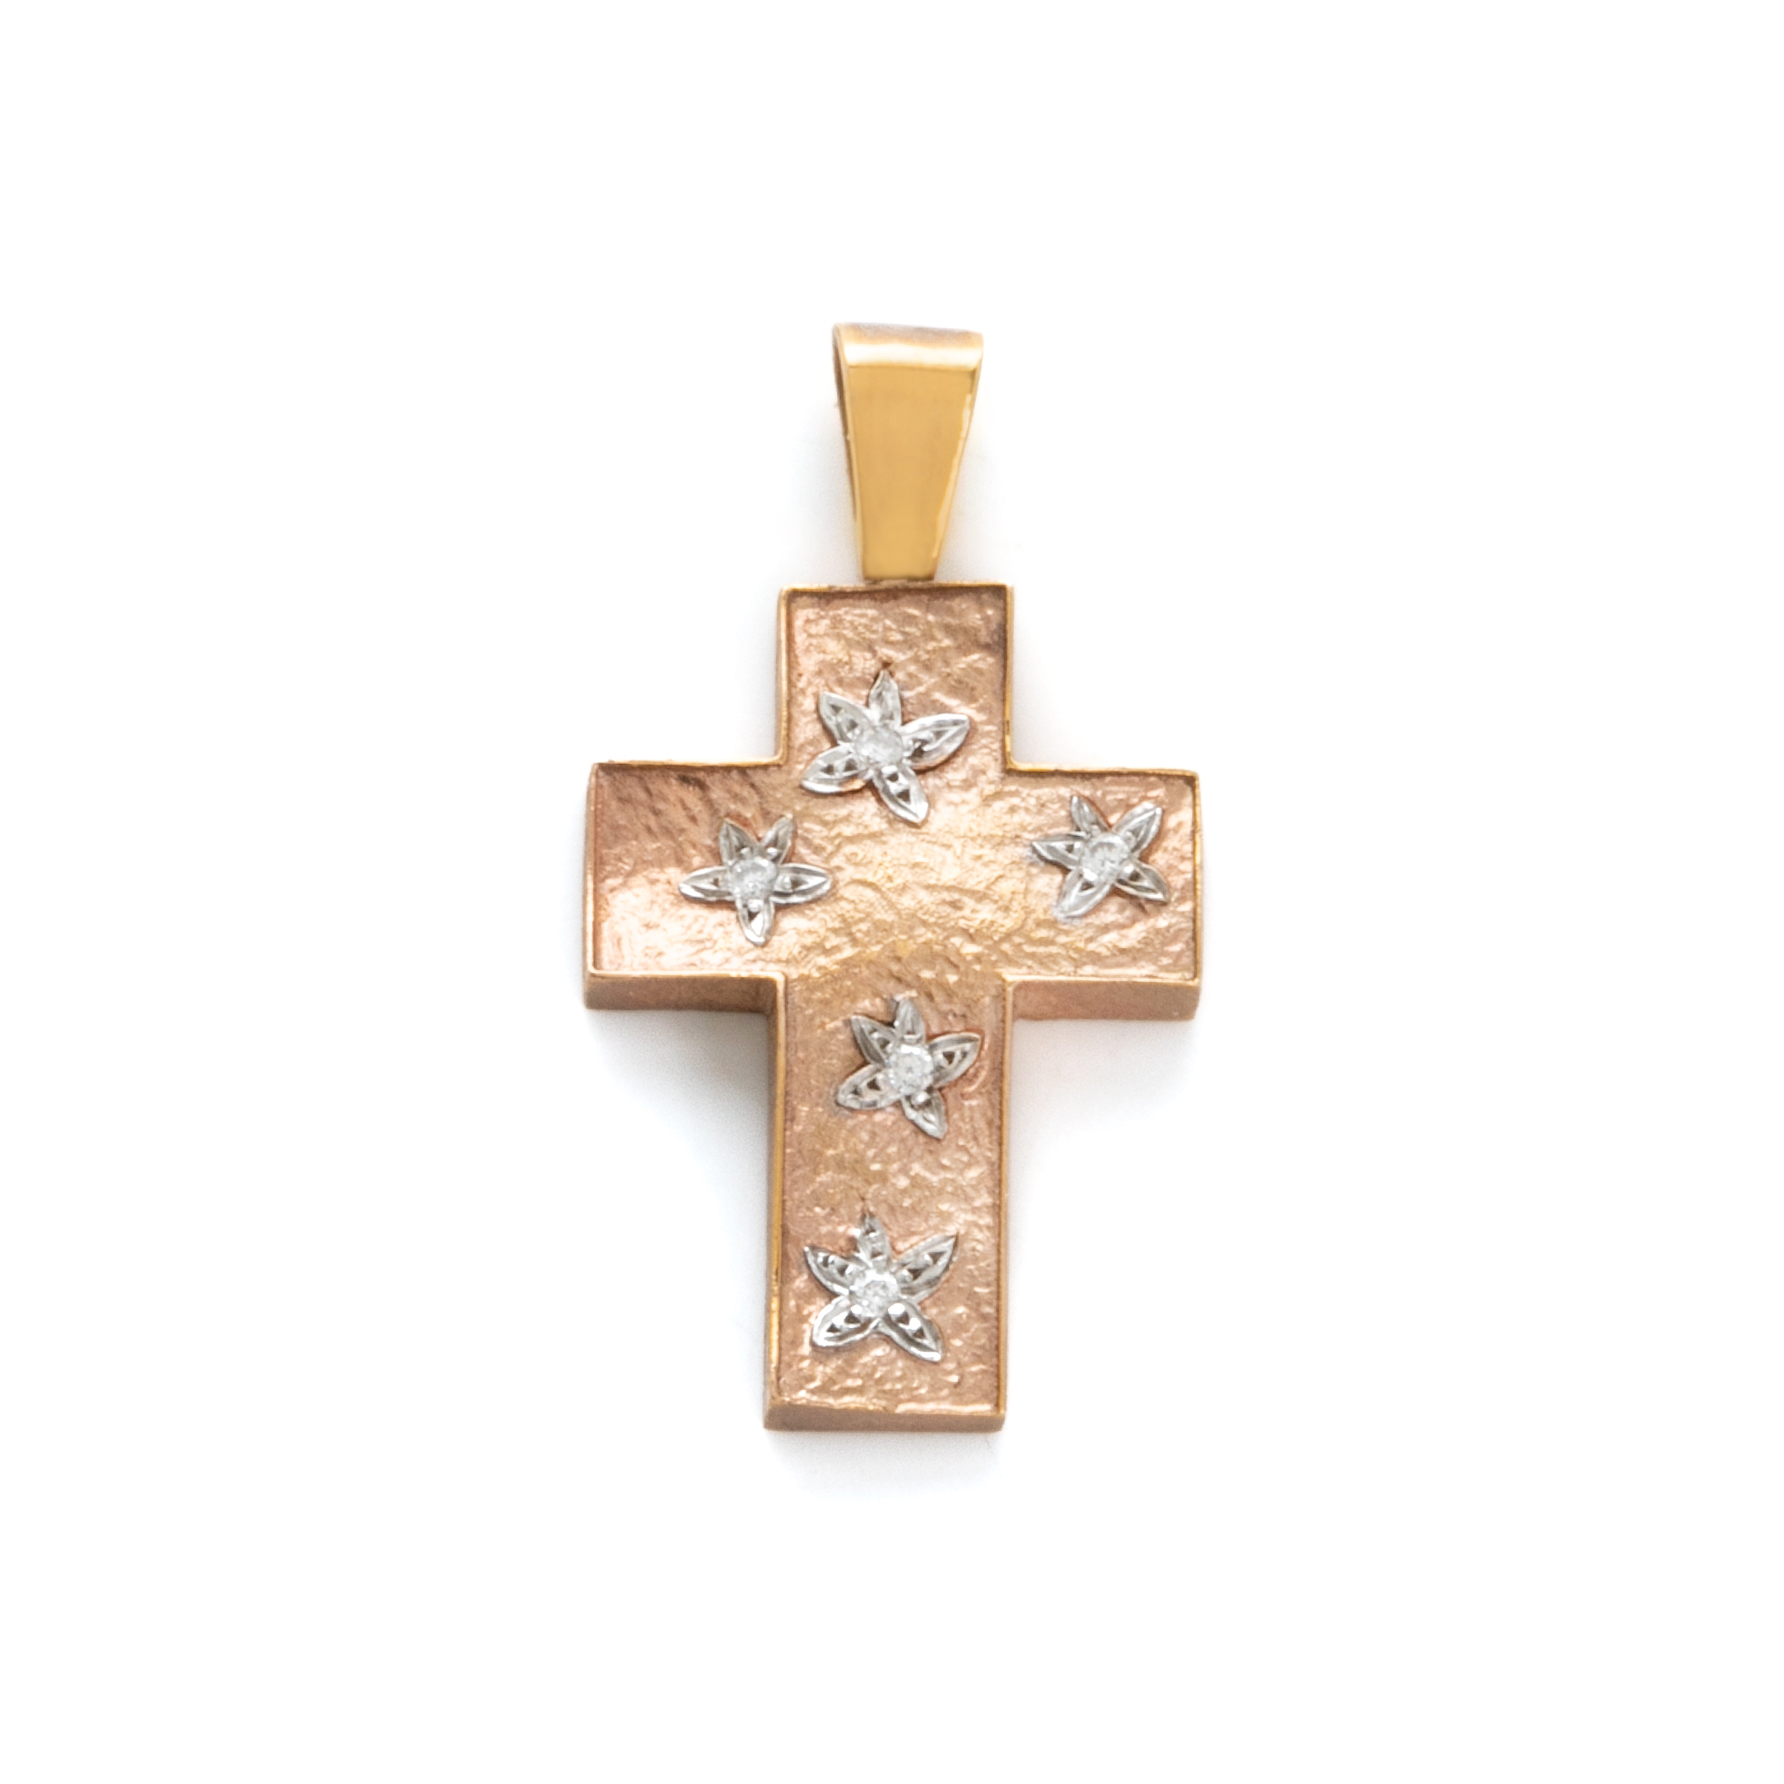 Σταυρός Ροζ Χρυσός Ματ Πλατύς με Λευκόχρυσα Λουλουδάκια (072866)